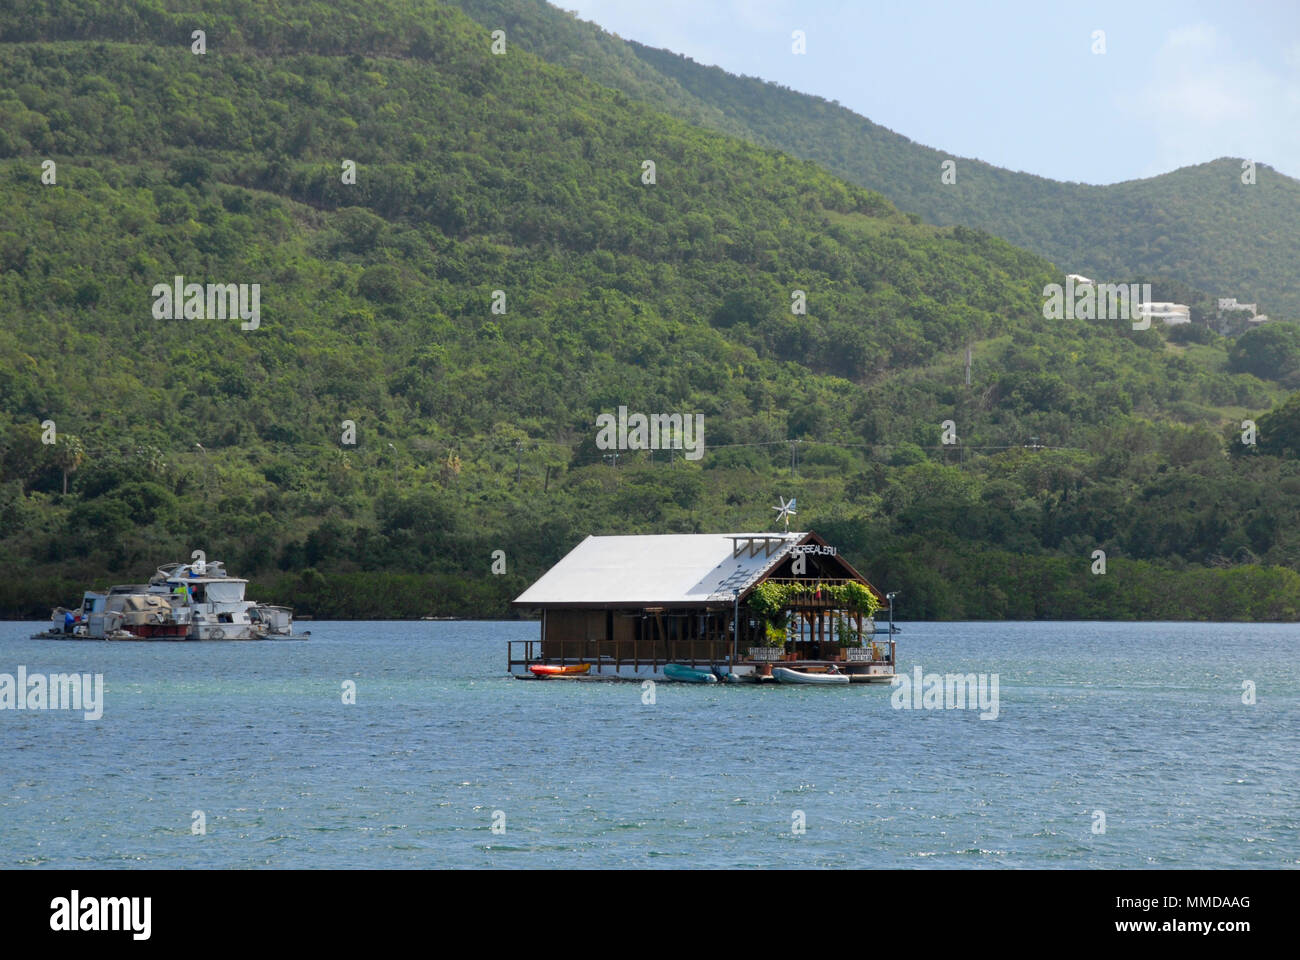 Restaurante flotante en medio de la laguna, San Martin, el Caribe Foto de stock